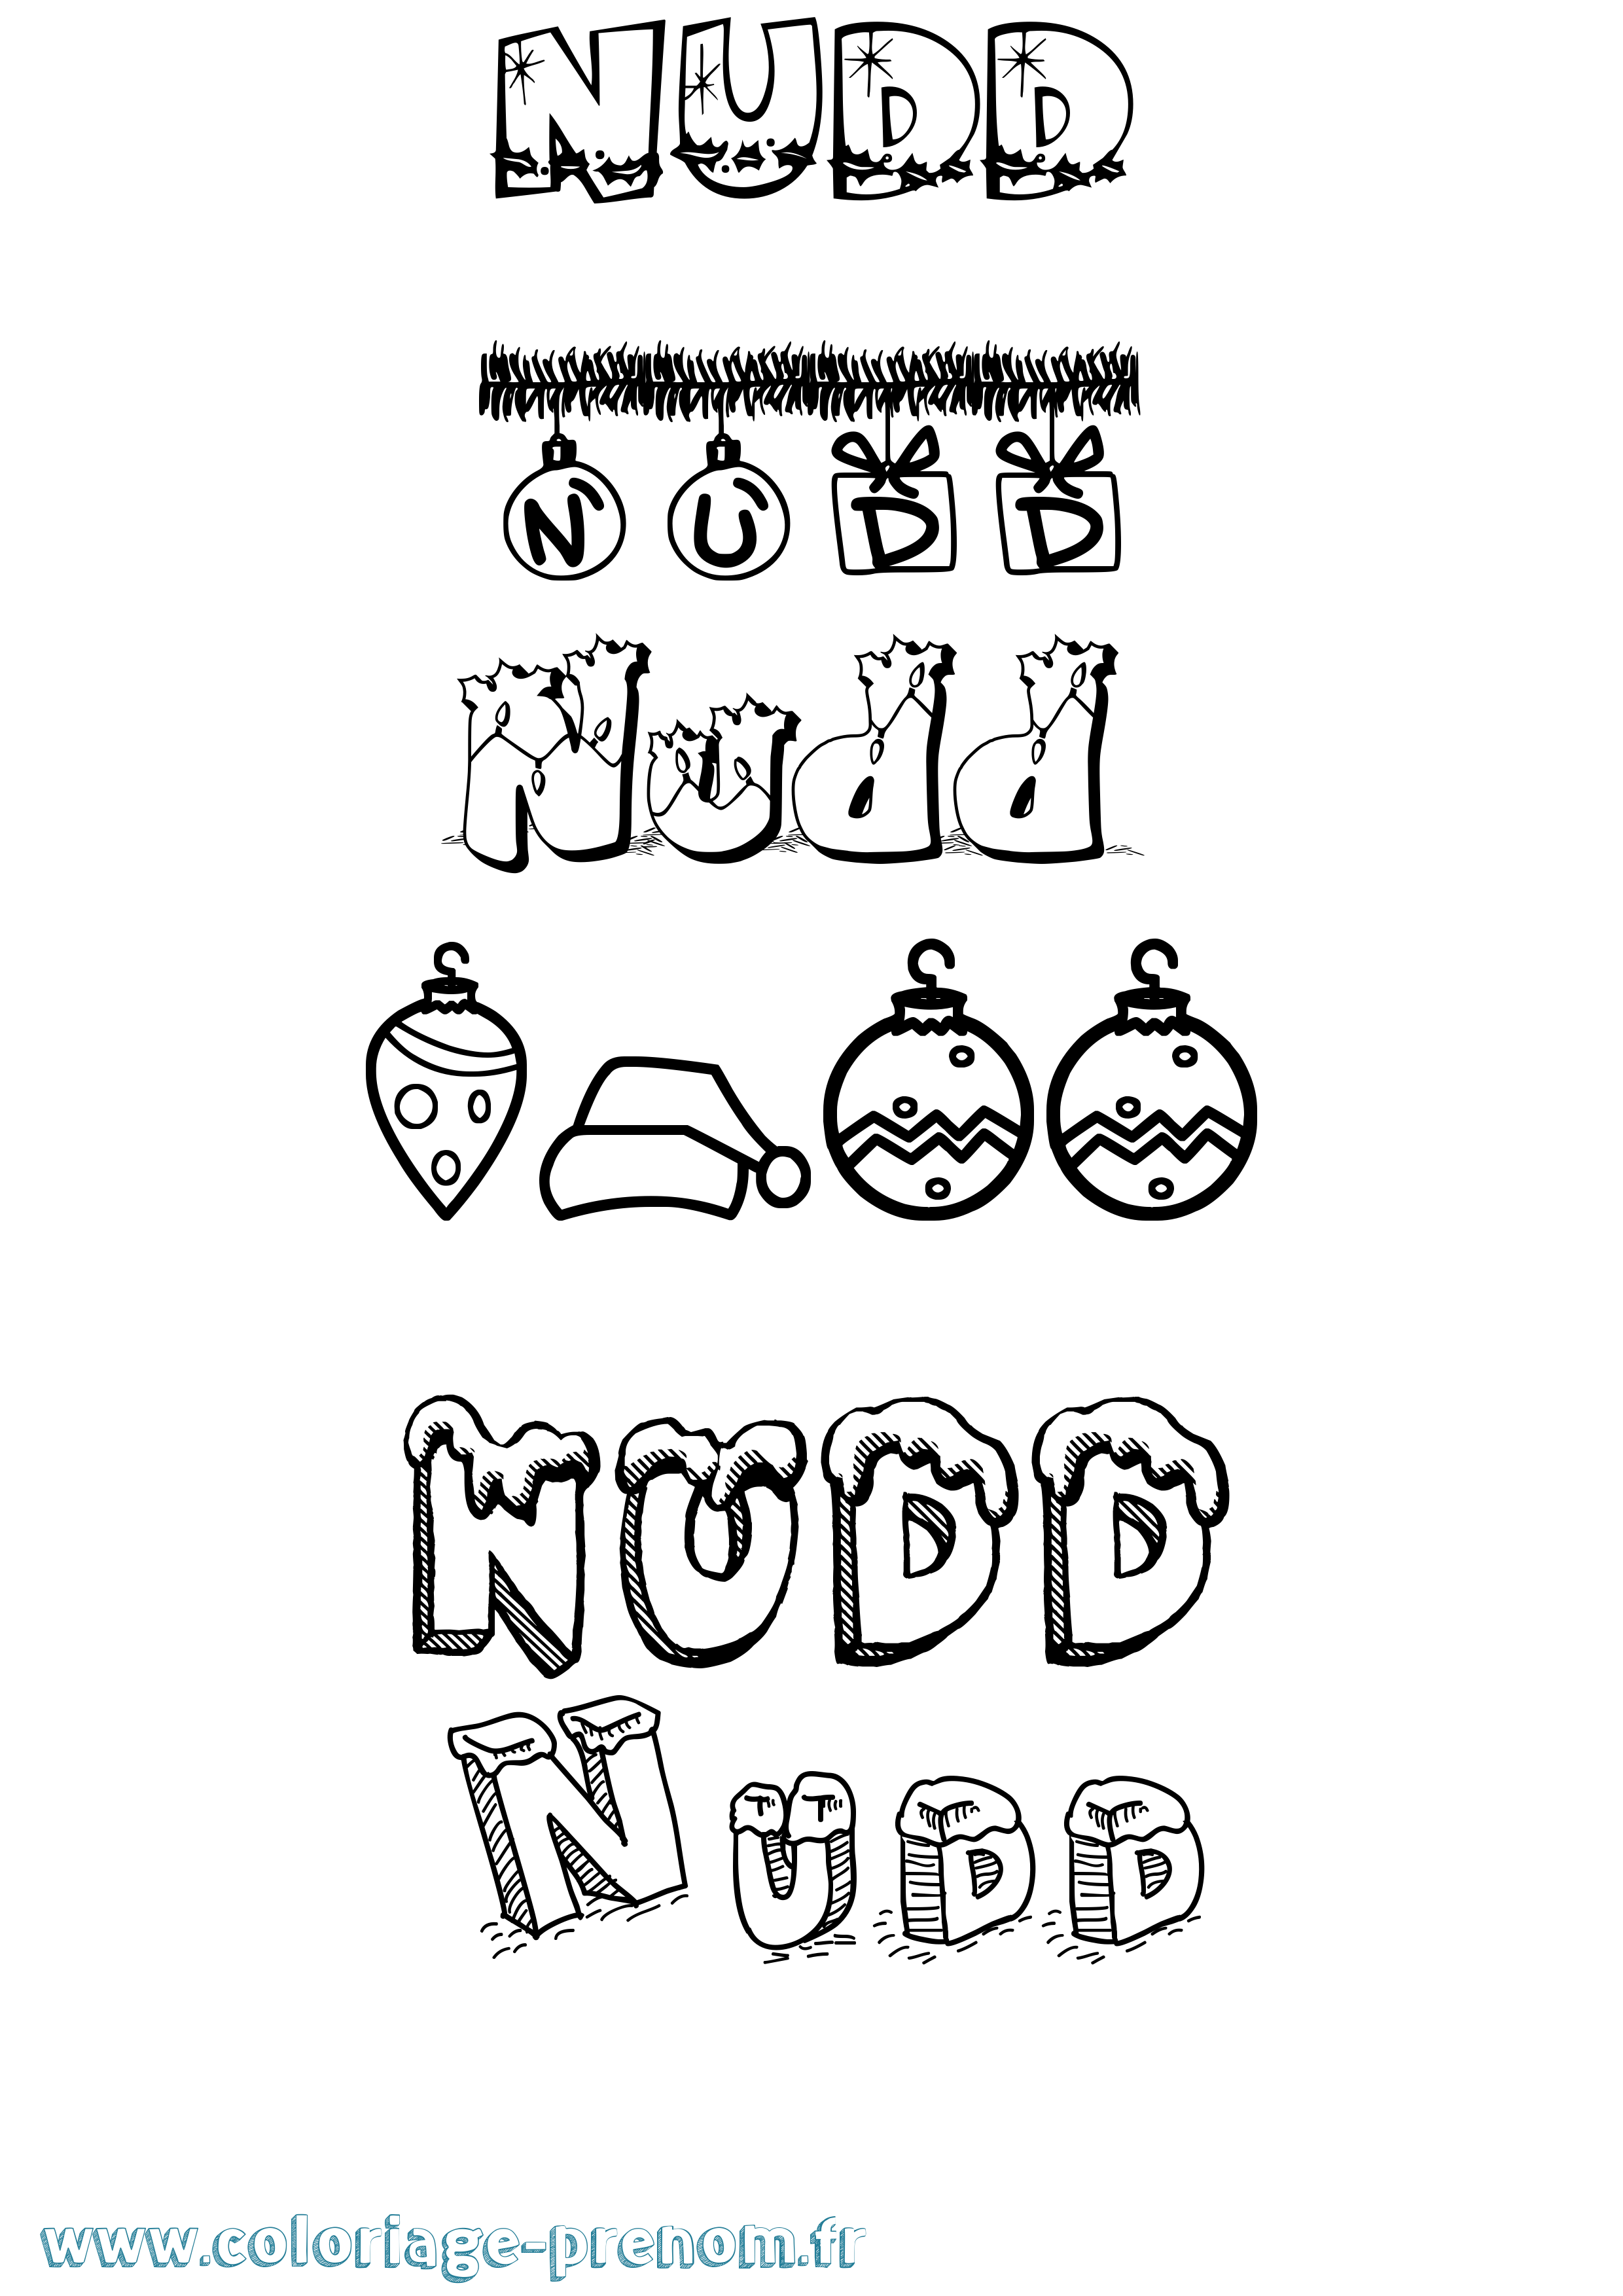 Coloriage prénom Nudd Noël